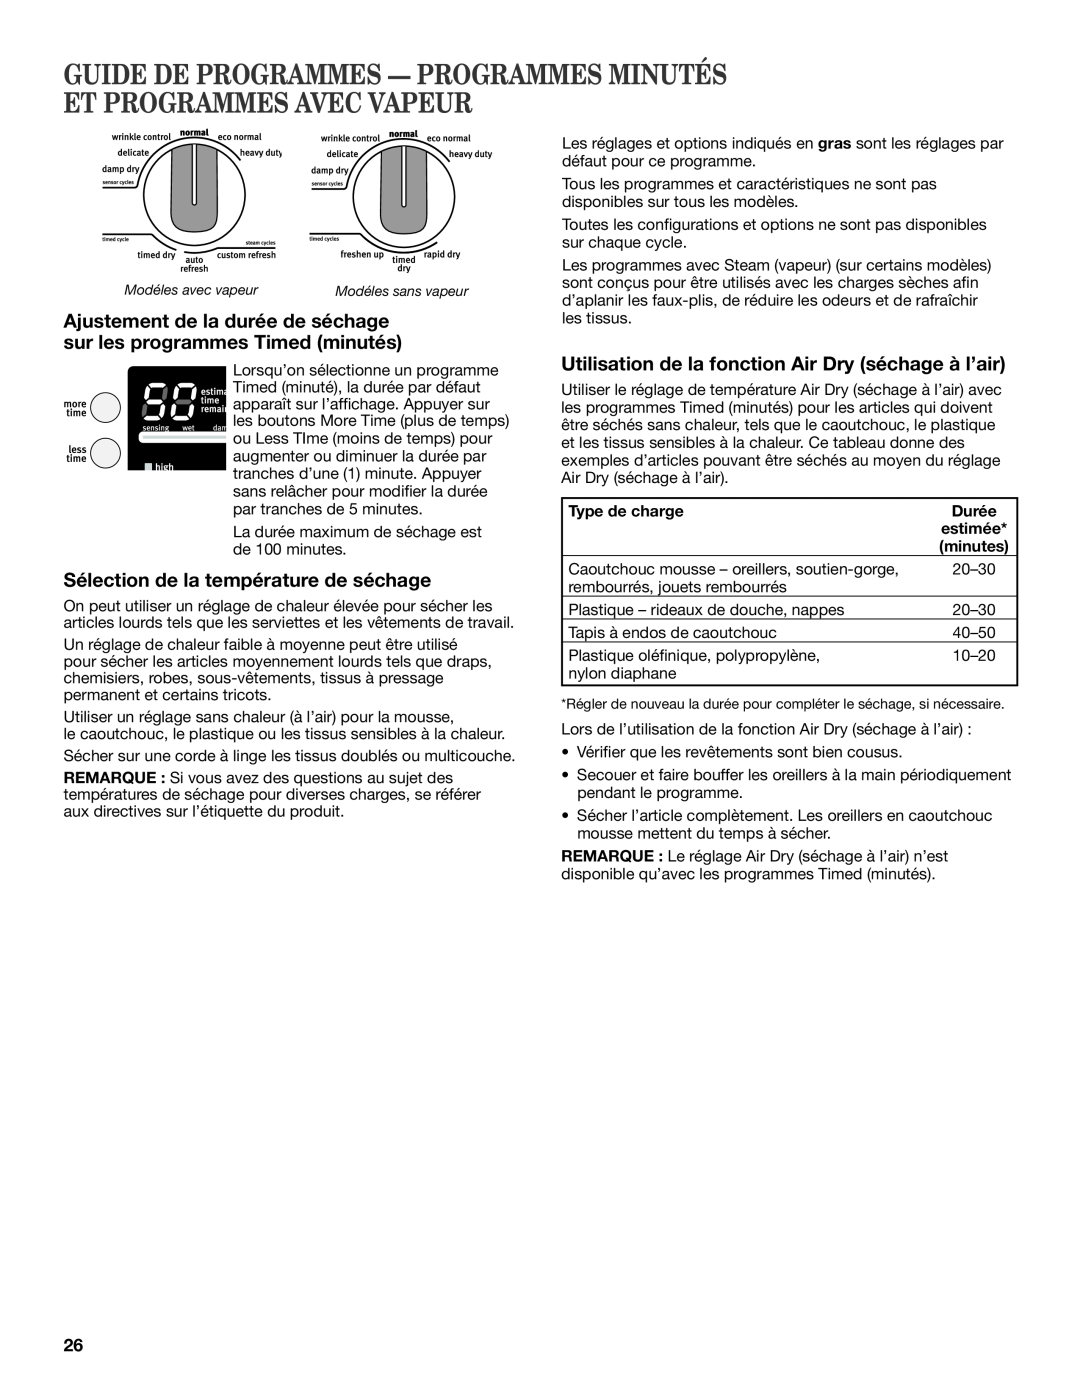 Maytag W10385090A manual Guide De Programmes - Programmes Minutés Et Programmes Avec Vapeur, Type de charge, Durée 